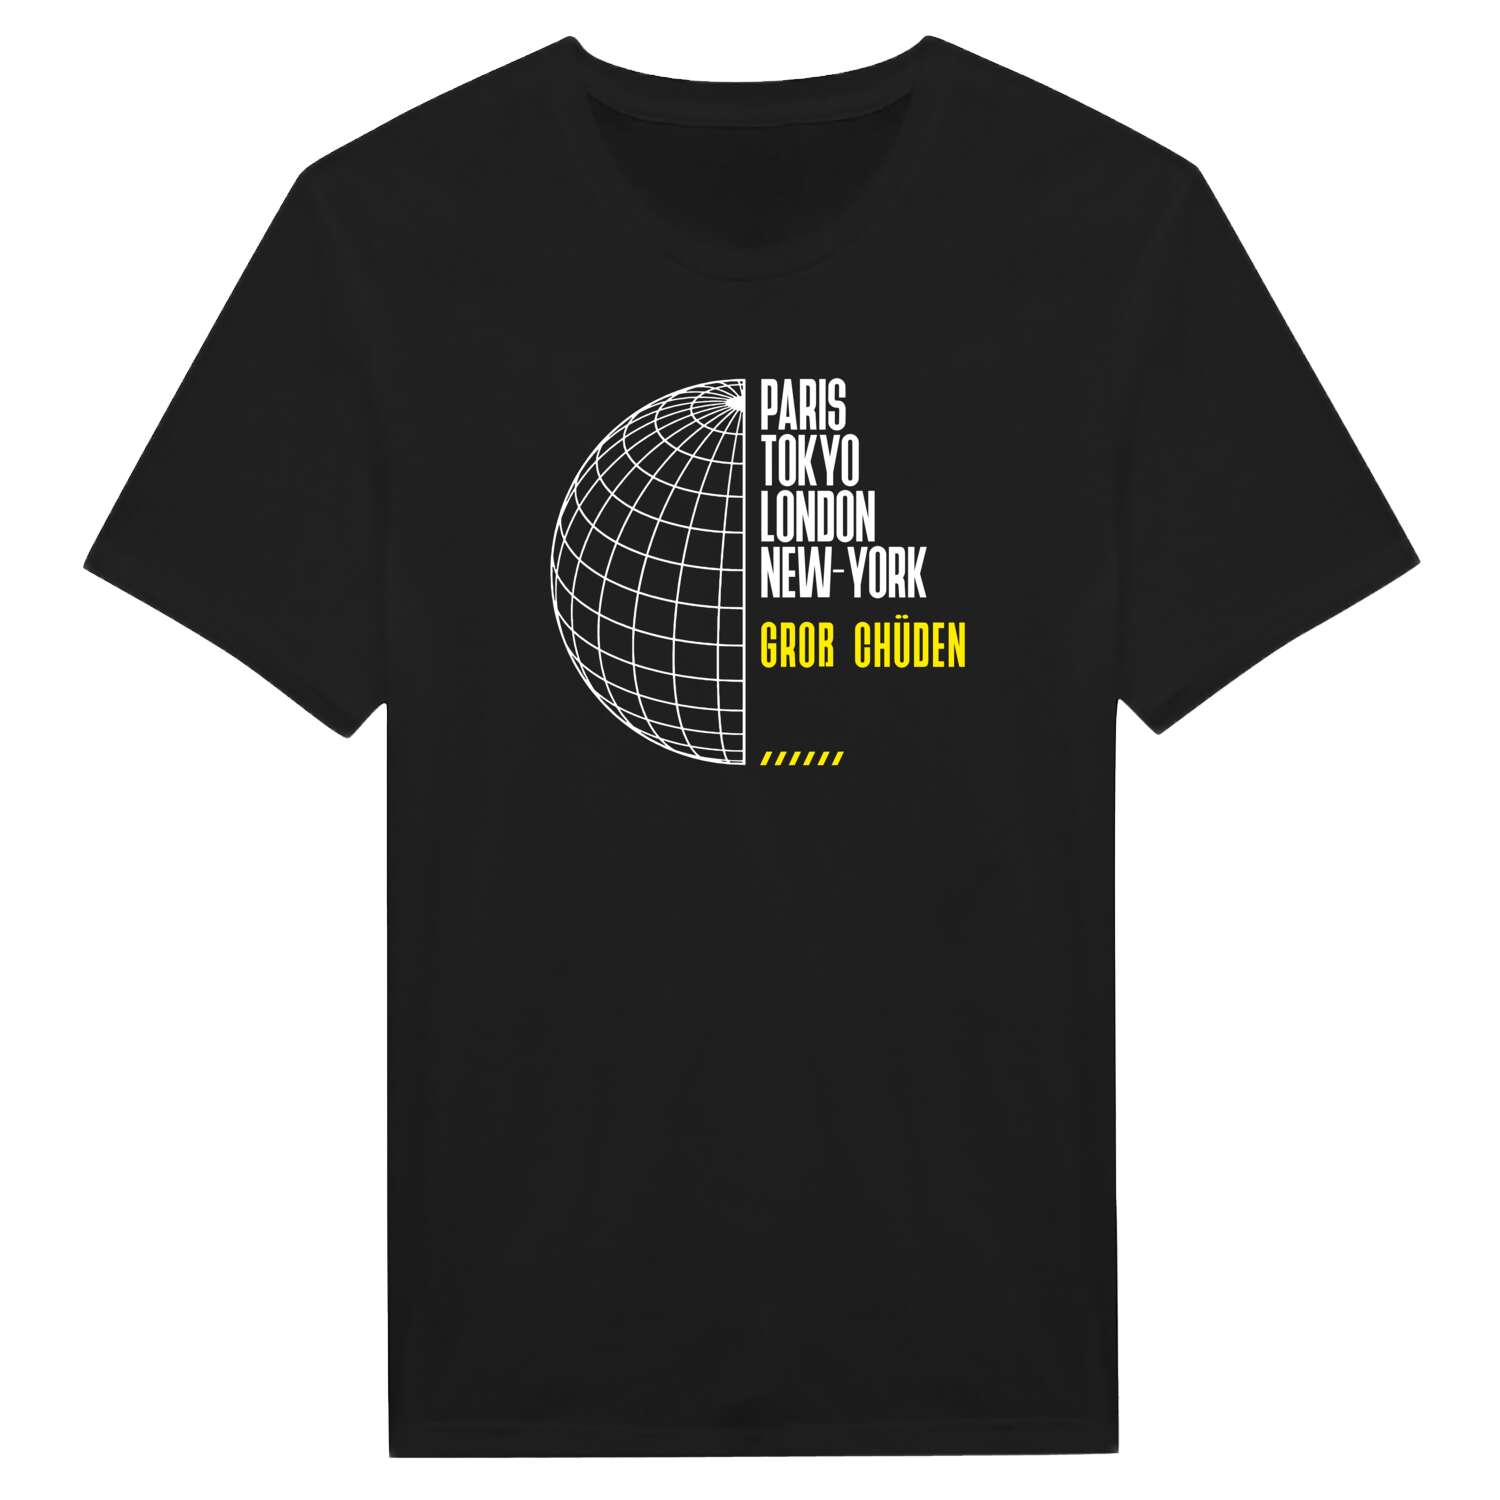 Groß Chüden T-Shirt »Paris Tokyo London«